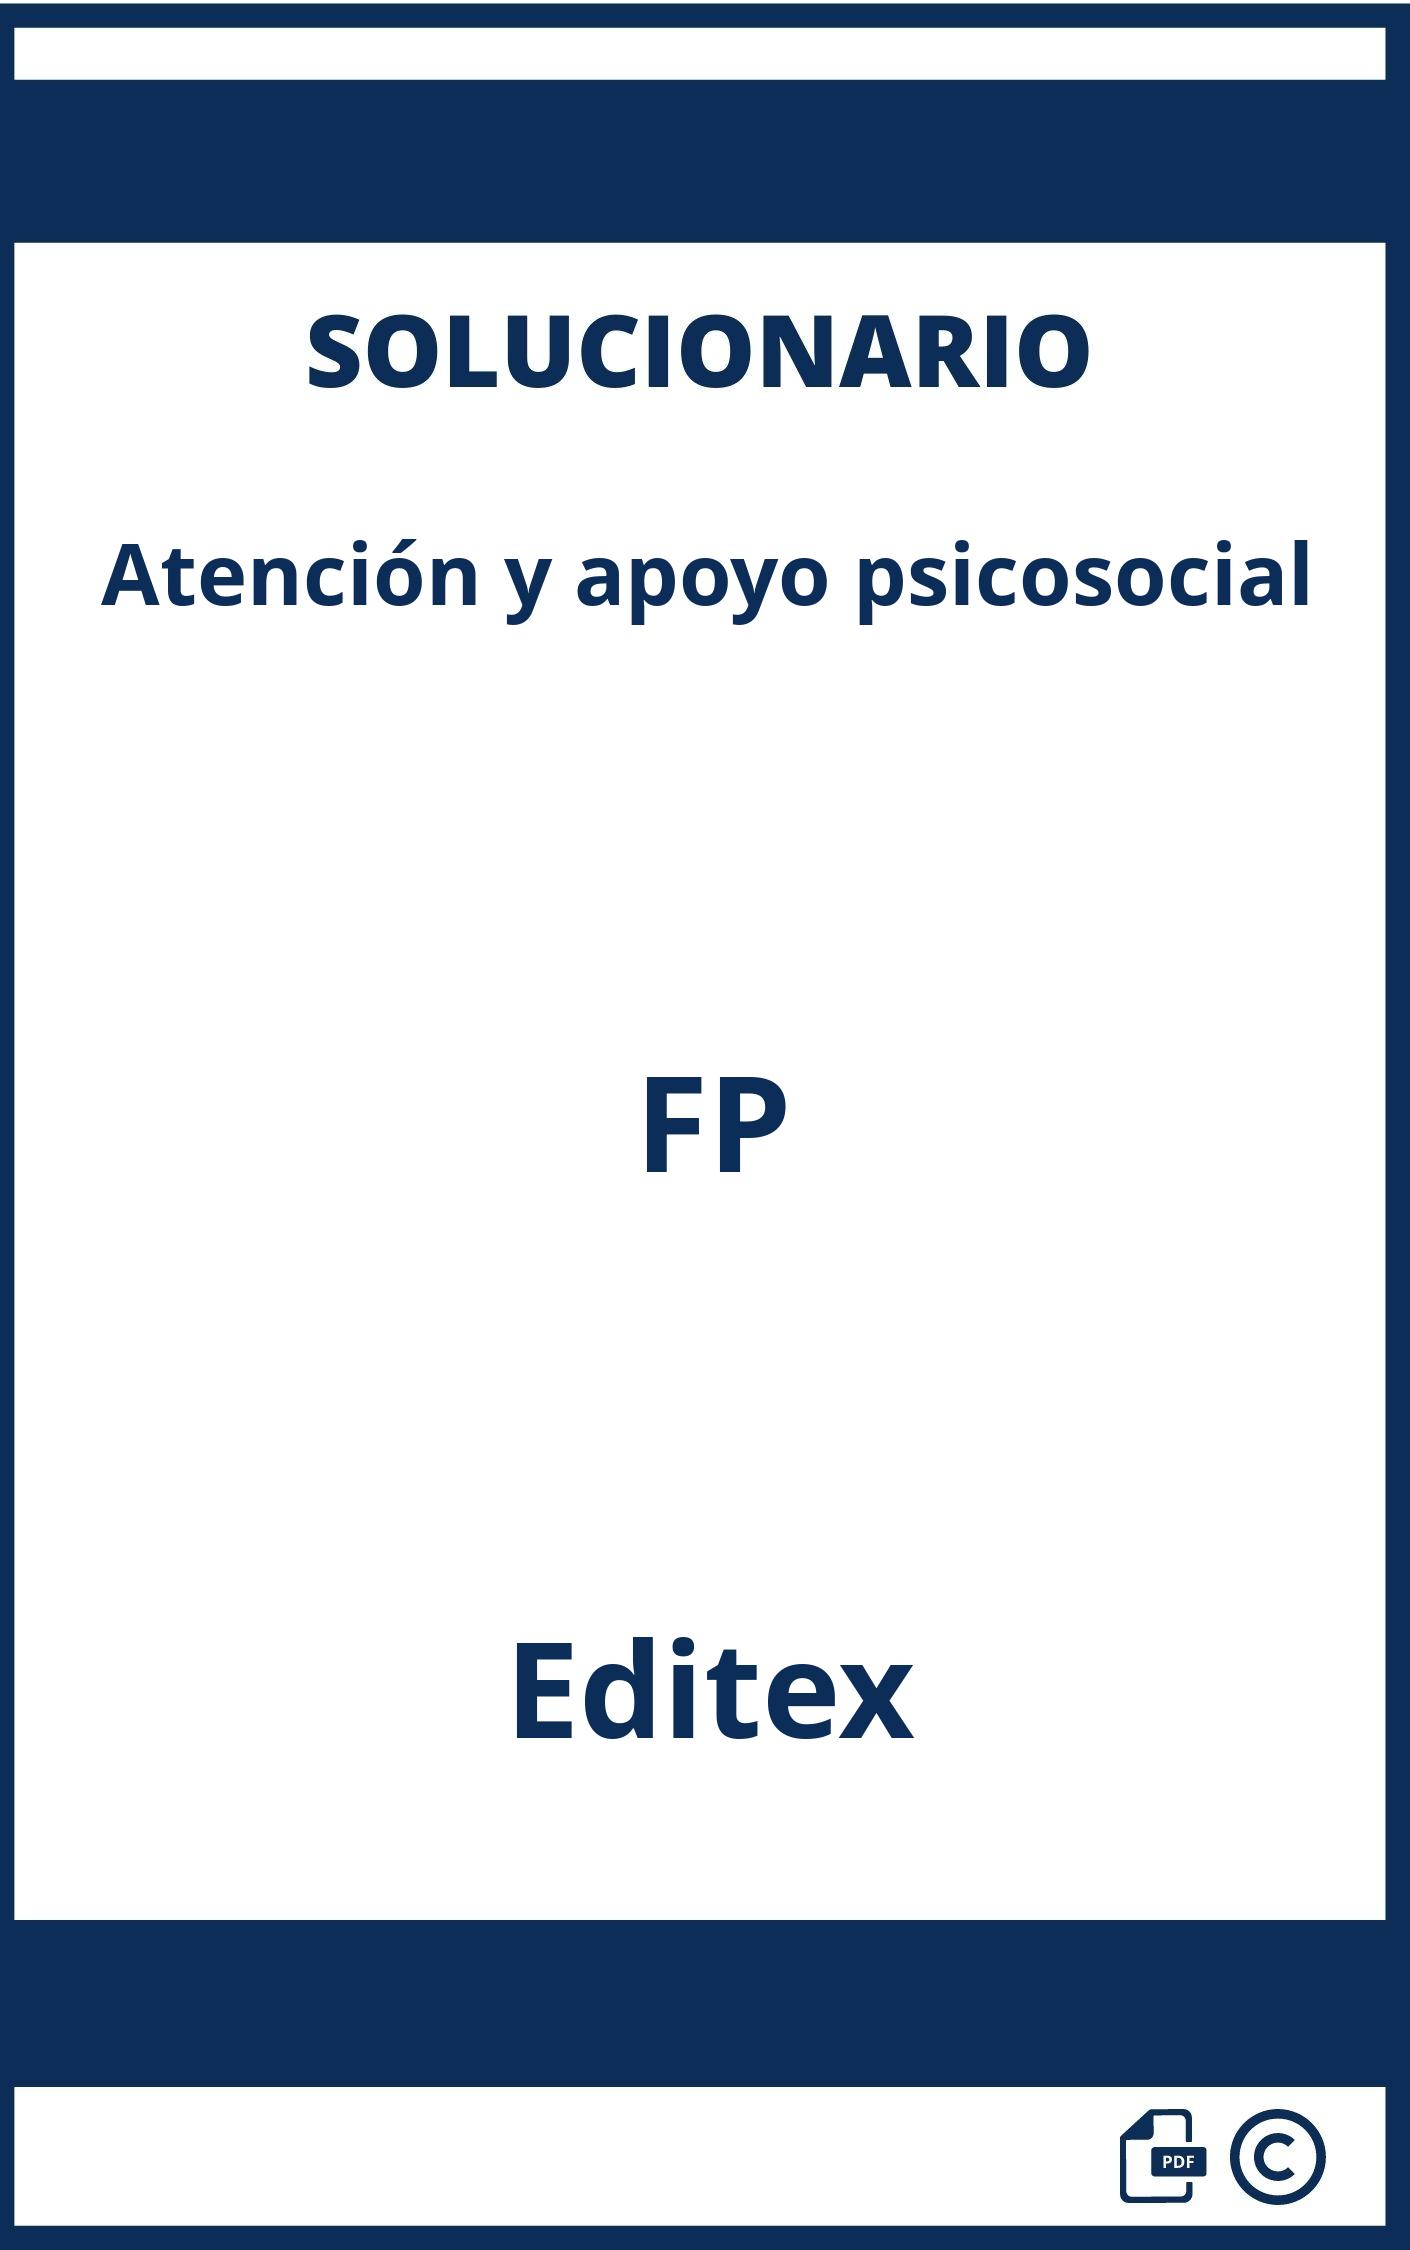 Solucionario Atención y apoyo psicosocial FP Editex